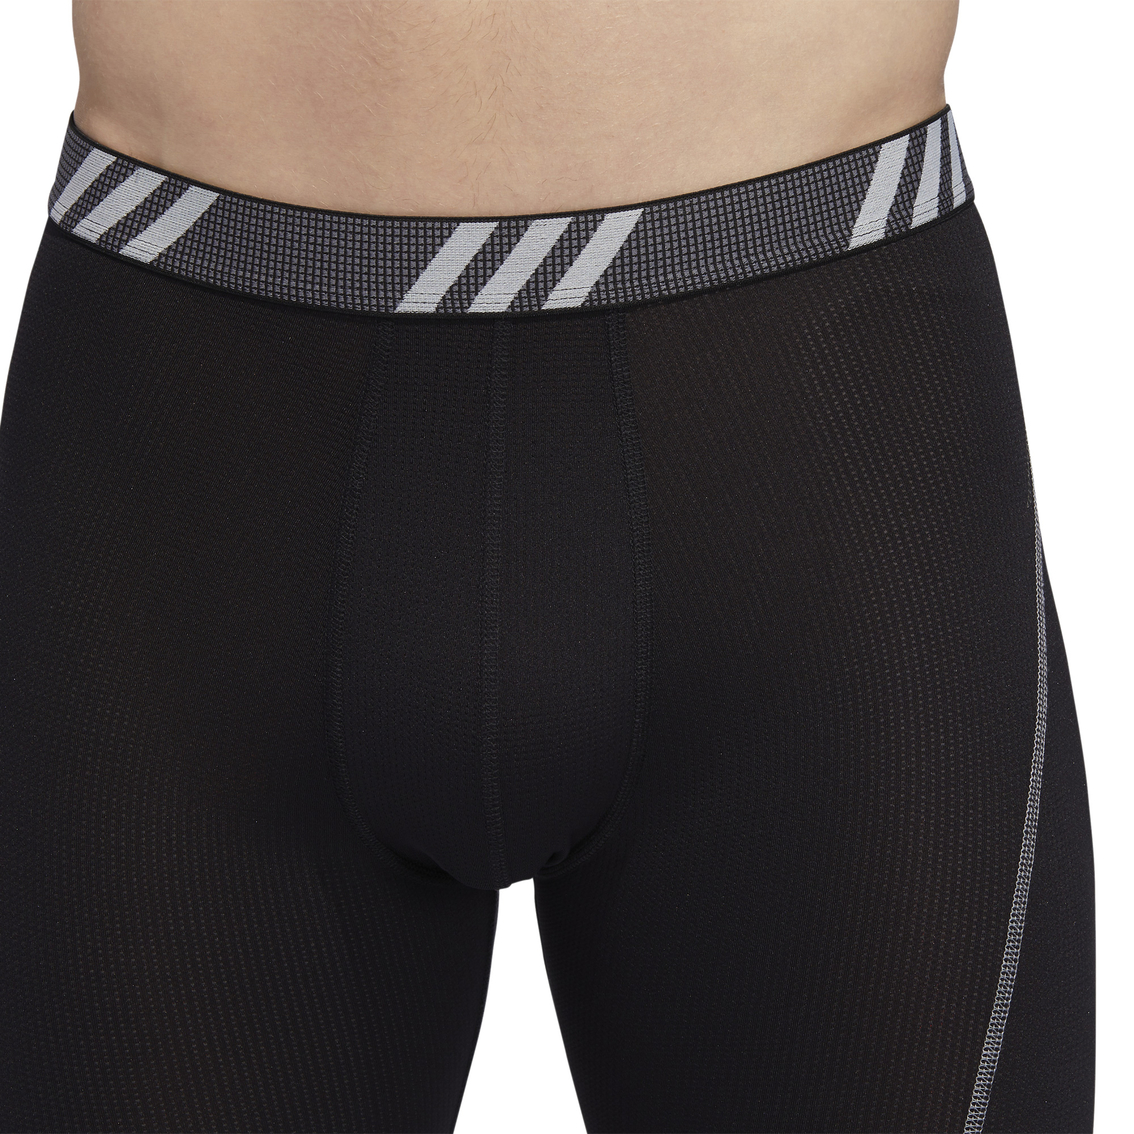 Adidas Performance Mesh Midway Boxer Briefs 2 Pk. | Underwear ...